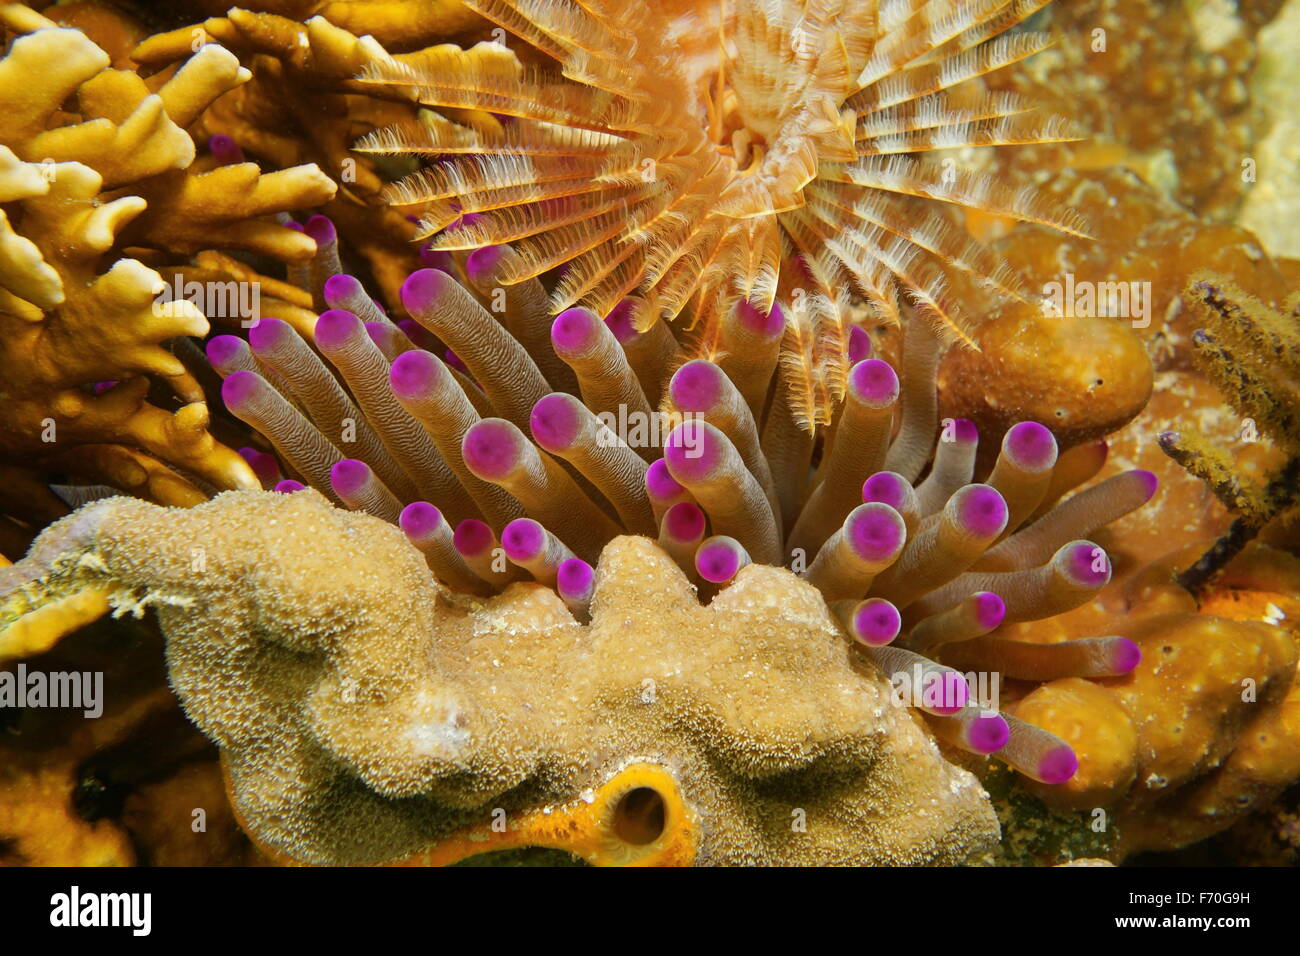 Unterwasser Meerestiere, Tentakeln der riesigen Karibik Anemone zwischen Korallen und einem Staubwedel Wurm, Mexiko Stockfoto